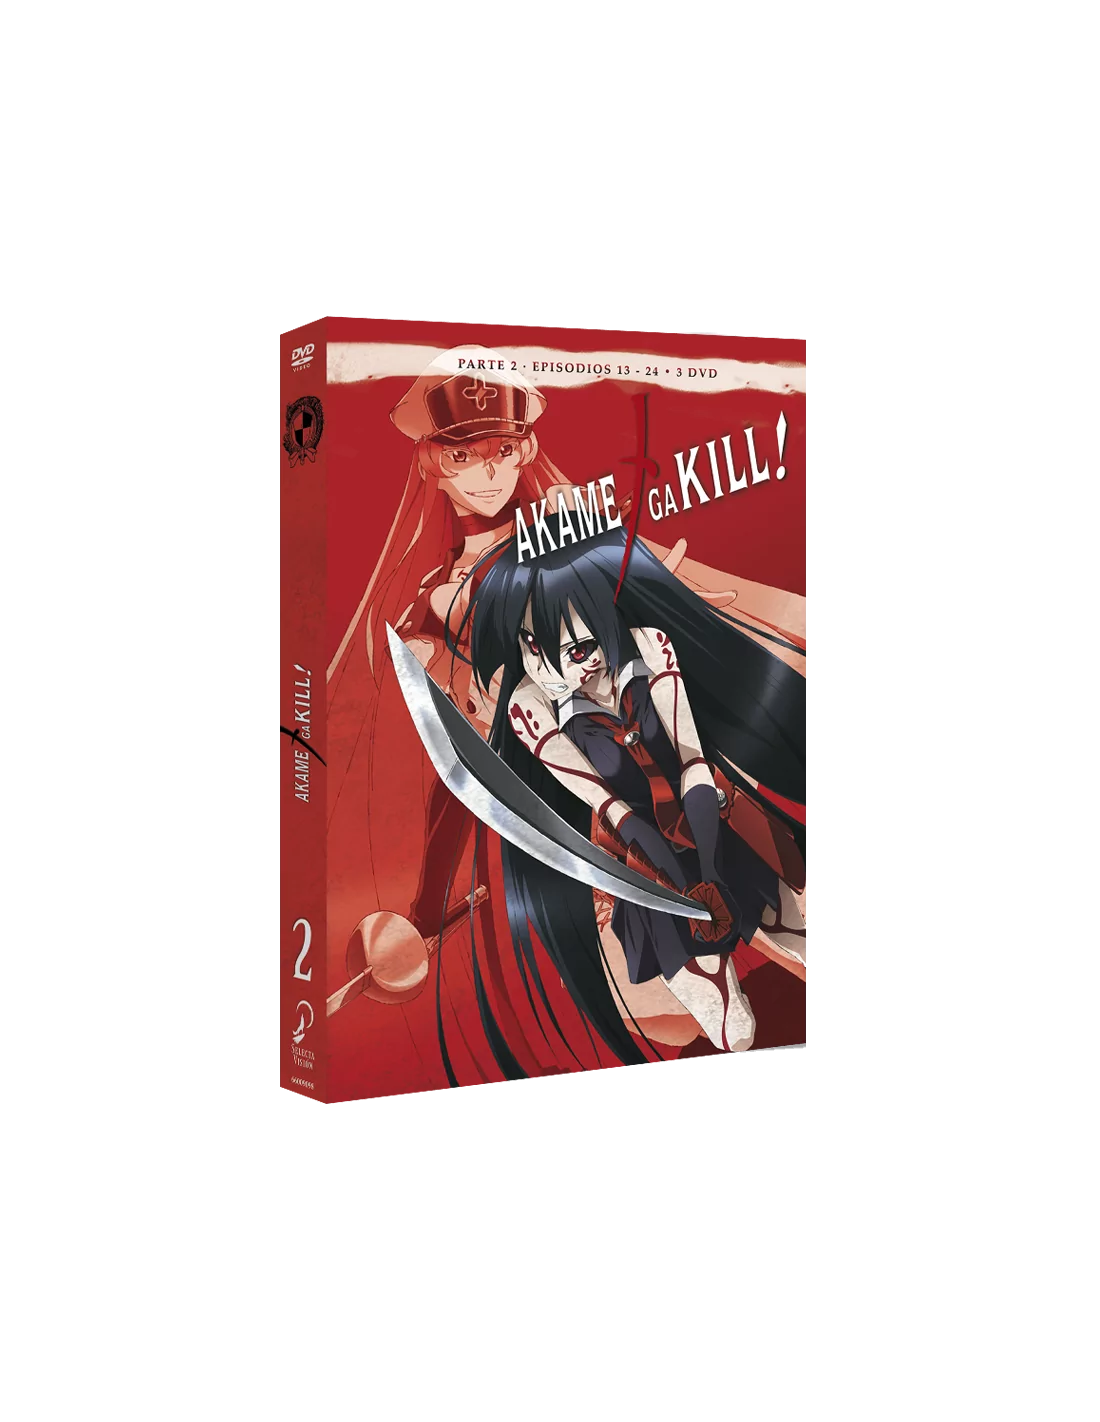 Akame Ga Kill Temporada 2 Episodios 13 A 24 [DVD] 8420266015112